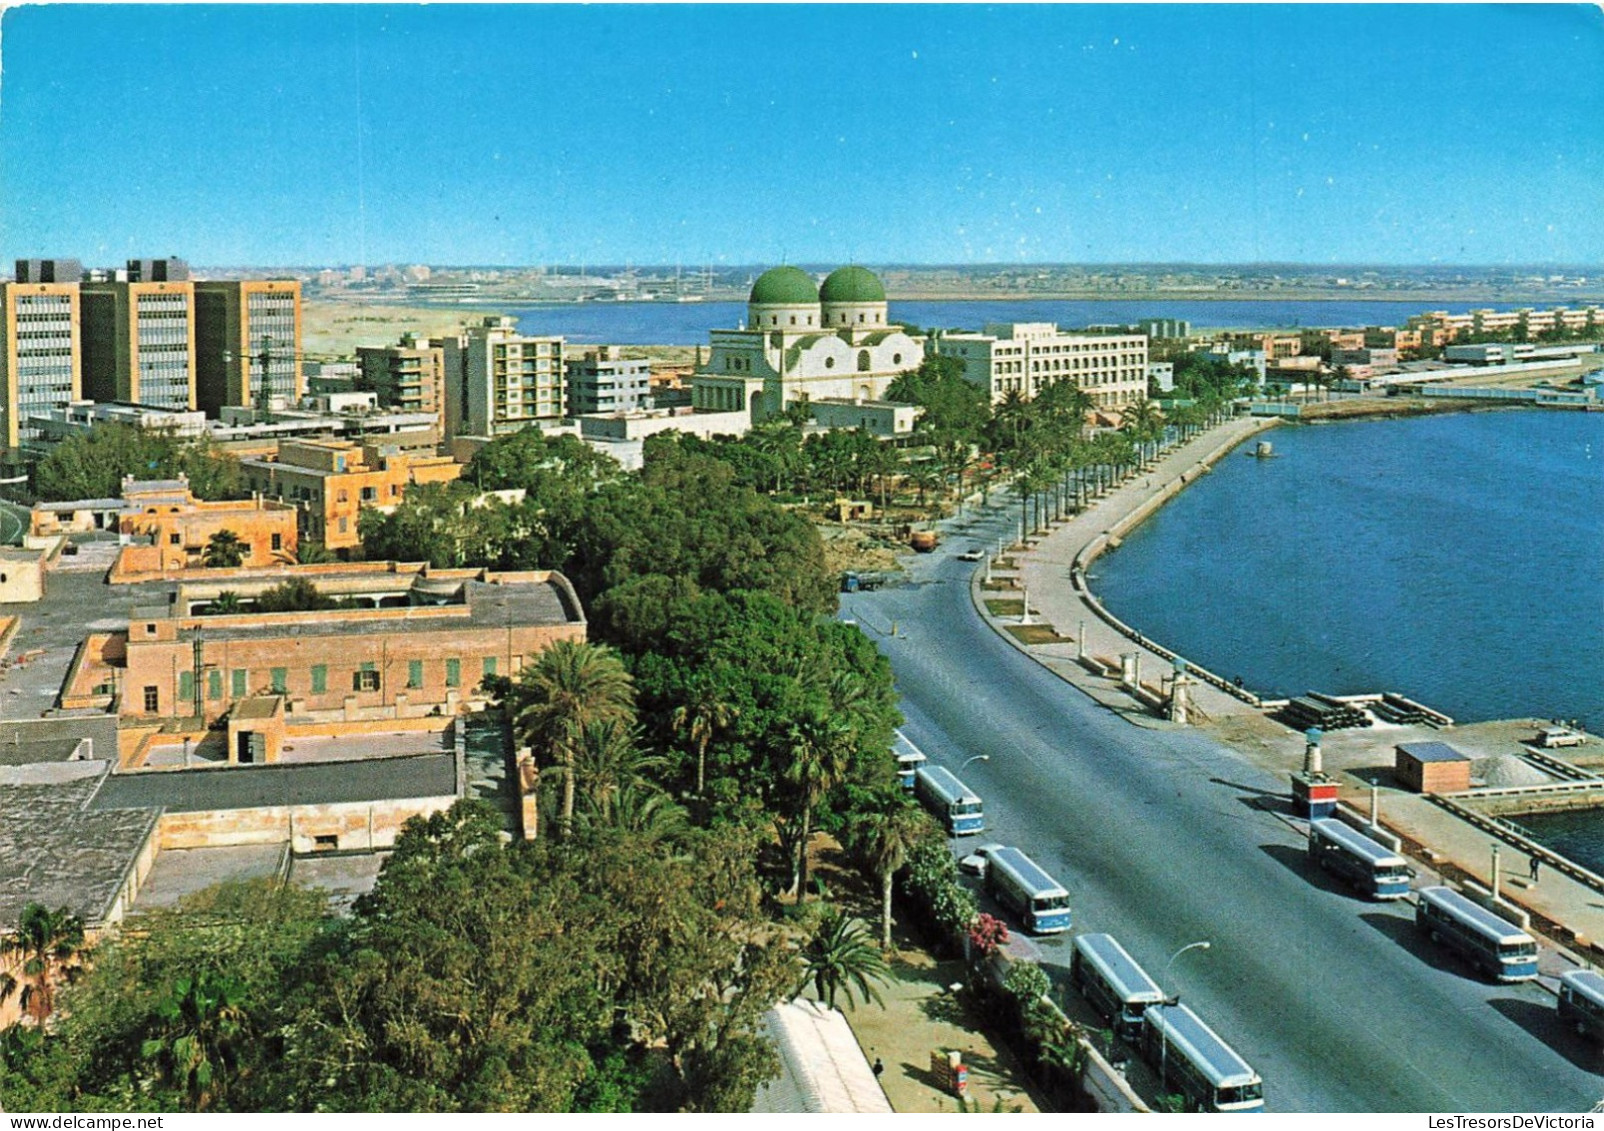 LYBIE - Benghazi - General View - Bus - Vue Générale - Bus - Vue Générale - Carte Postale - Libya